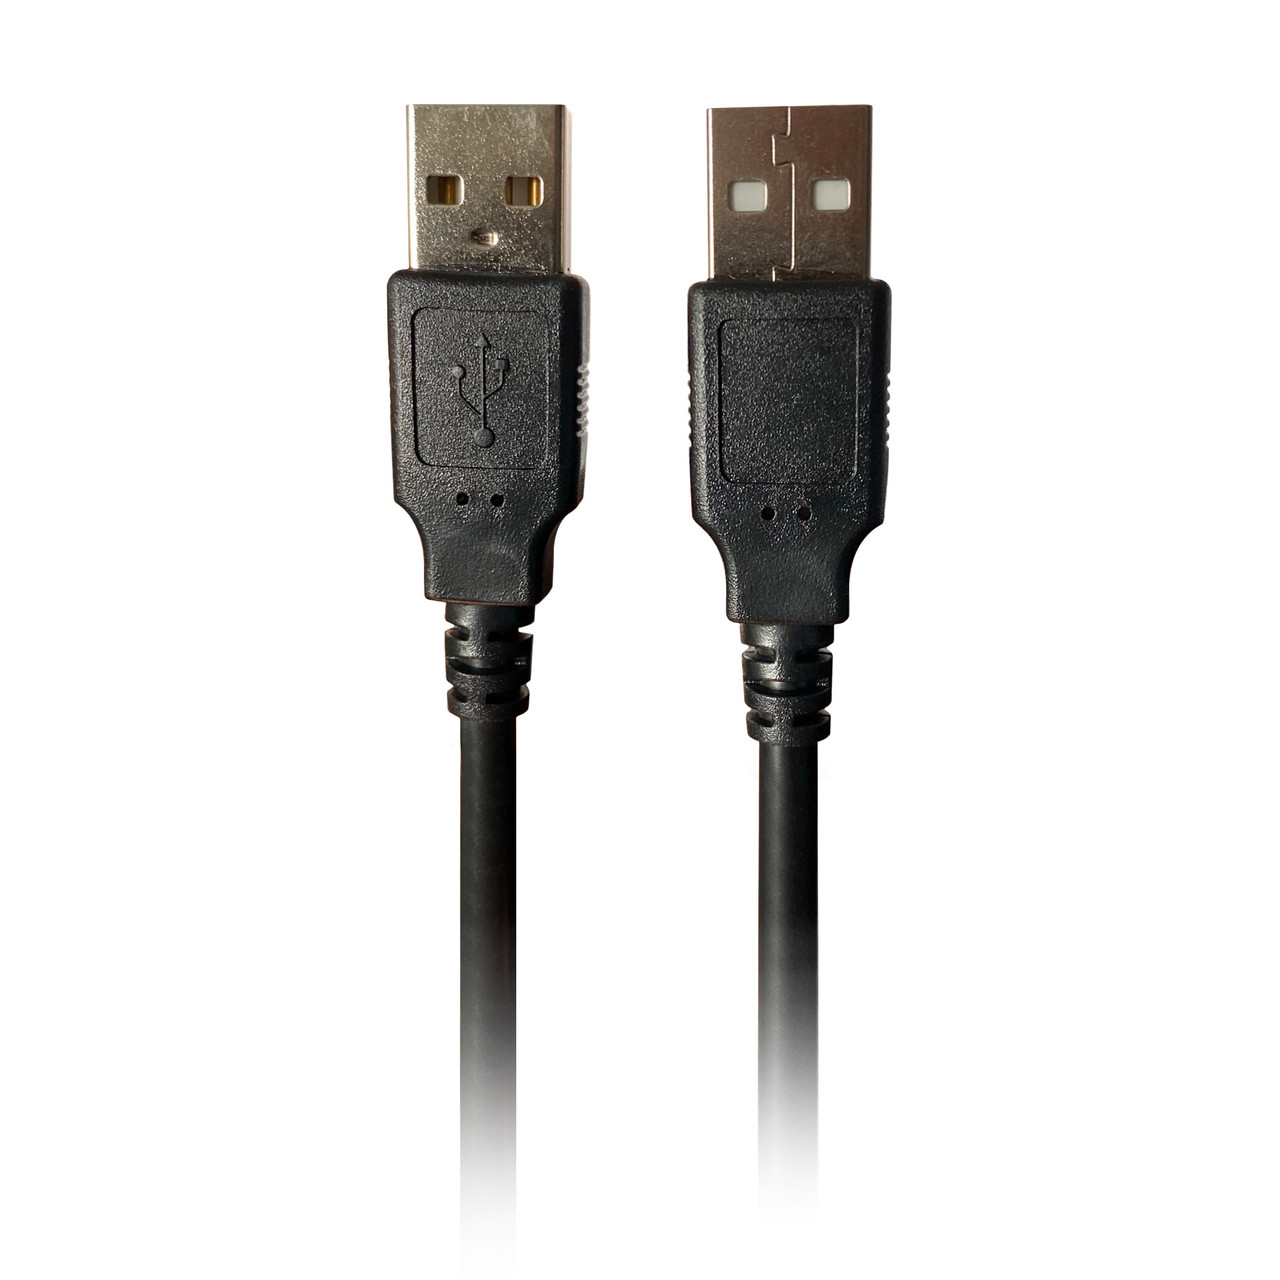 røgelse Svømmepøl Enrich USB 2.0 A to A Cable 3ft